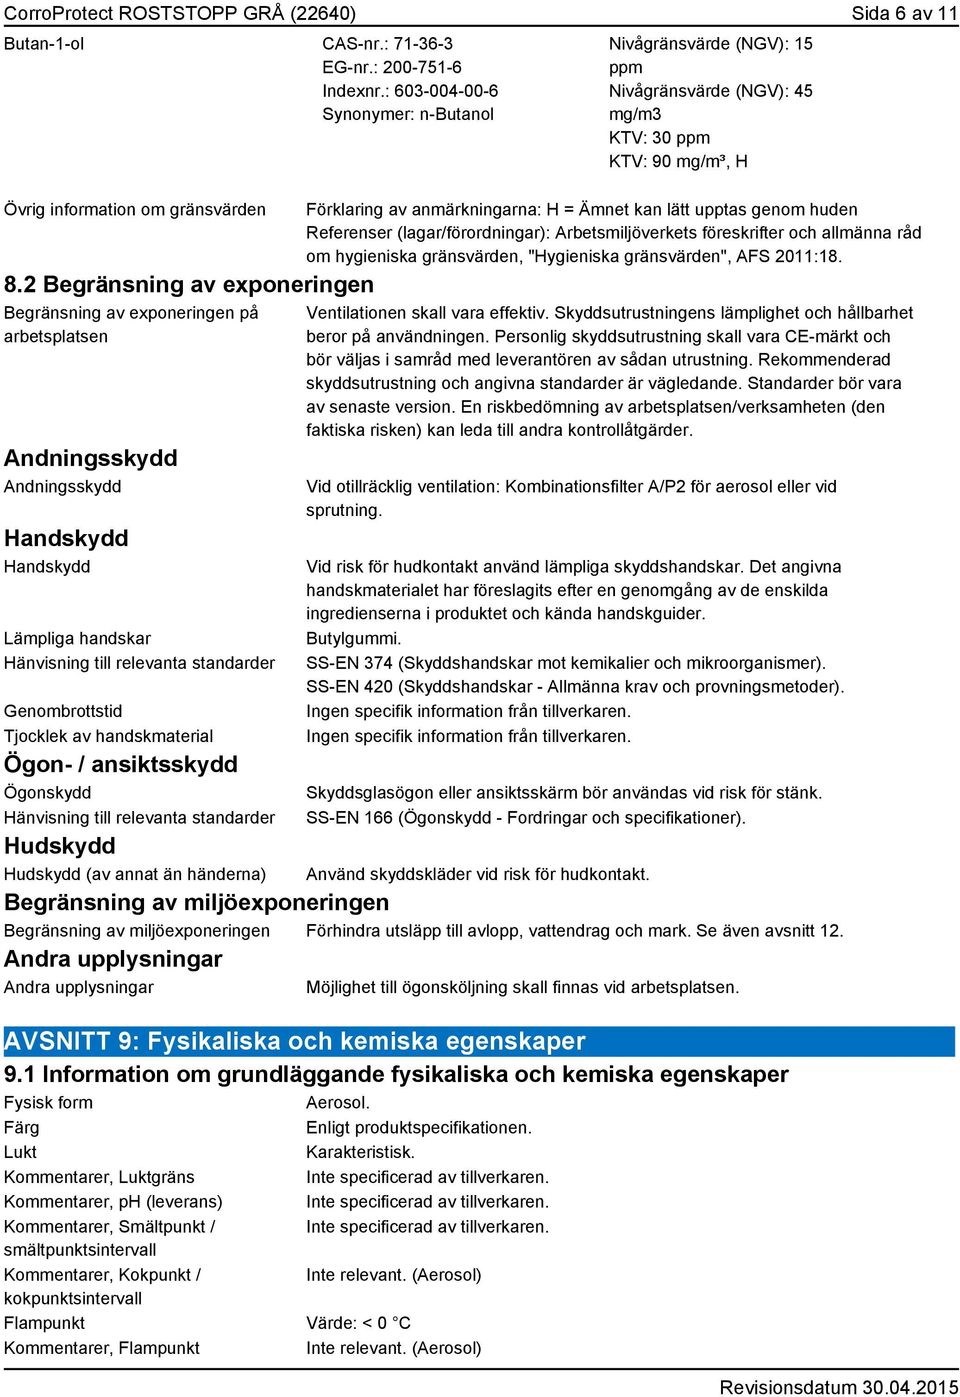 SÄKERHETSDATABLAD CorroProtect ROSTSTOPP GRÅ (22640) - PDF Free ...